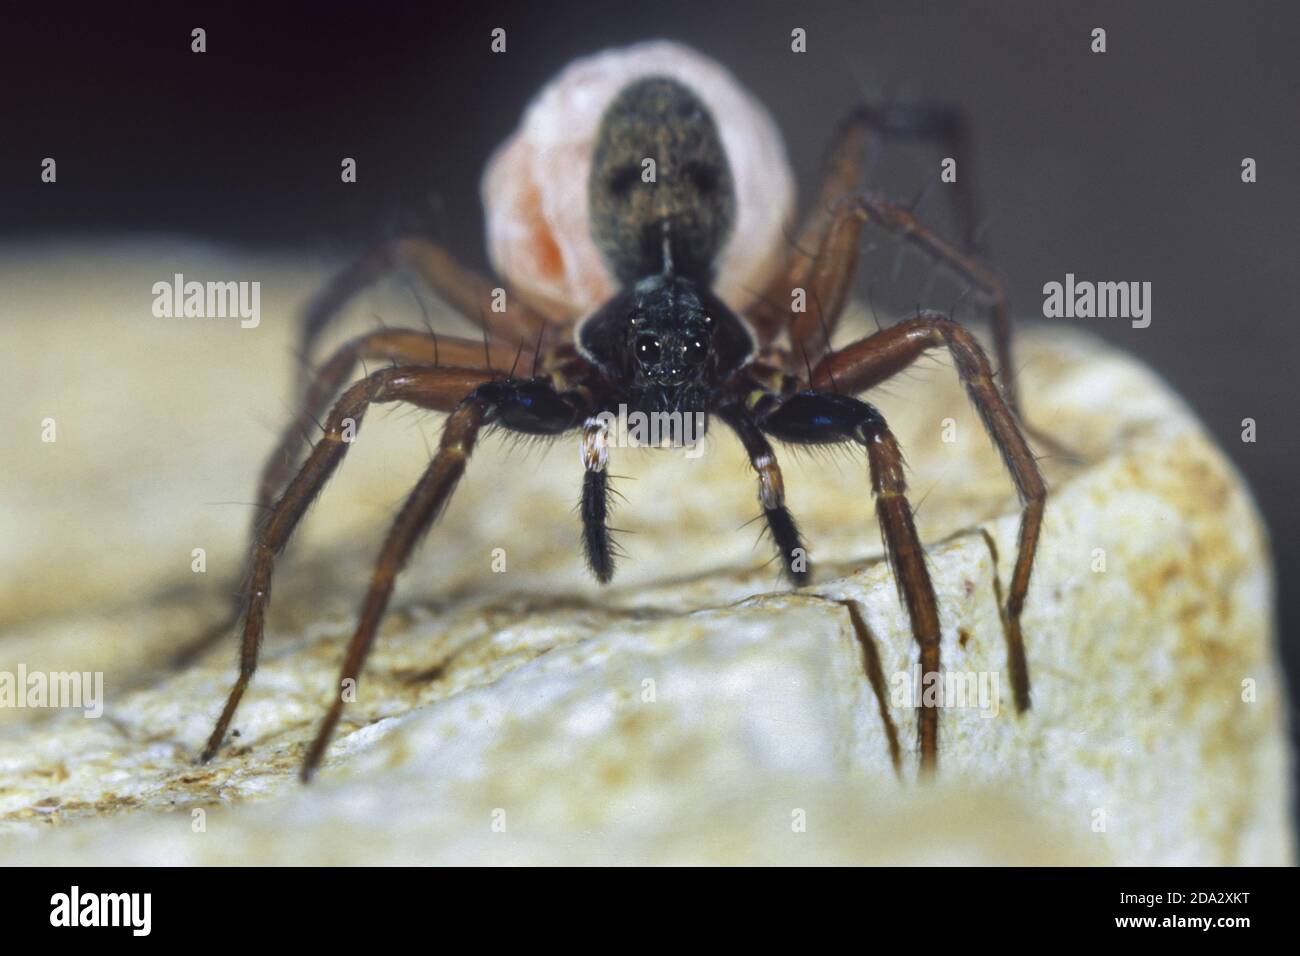 araignées de loup, araignées terrestres (Aulonia albimana), femelle avec cocon, Allemagne Banque D'Images